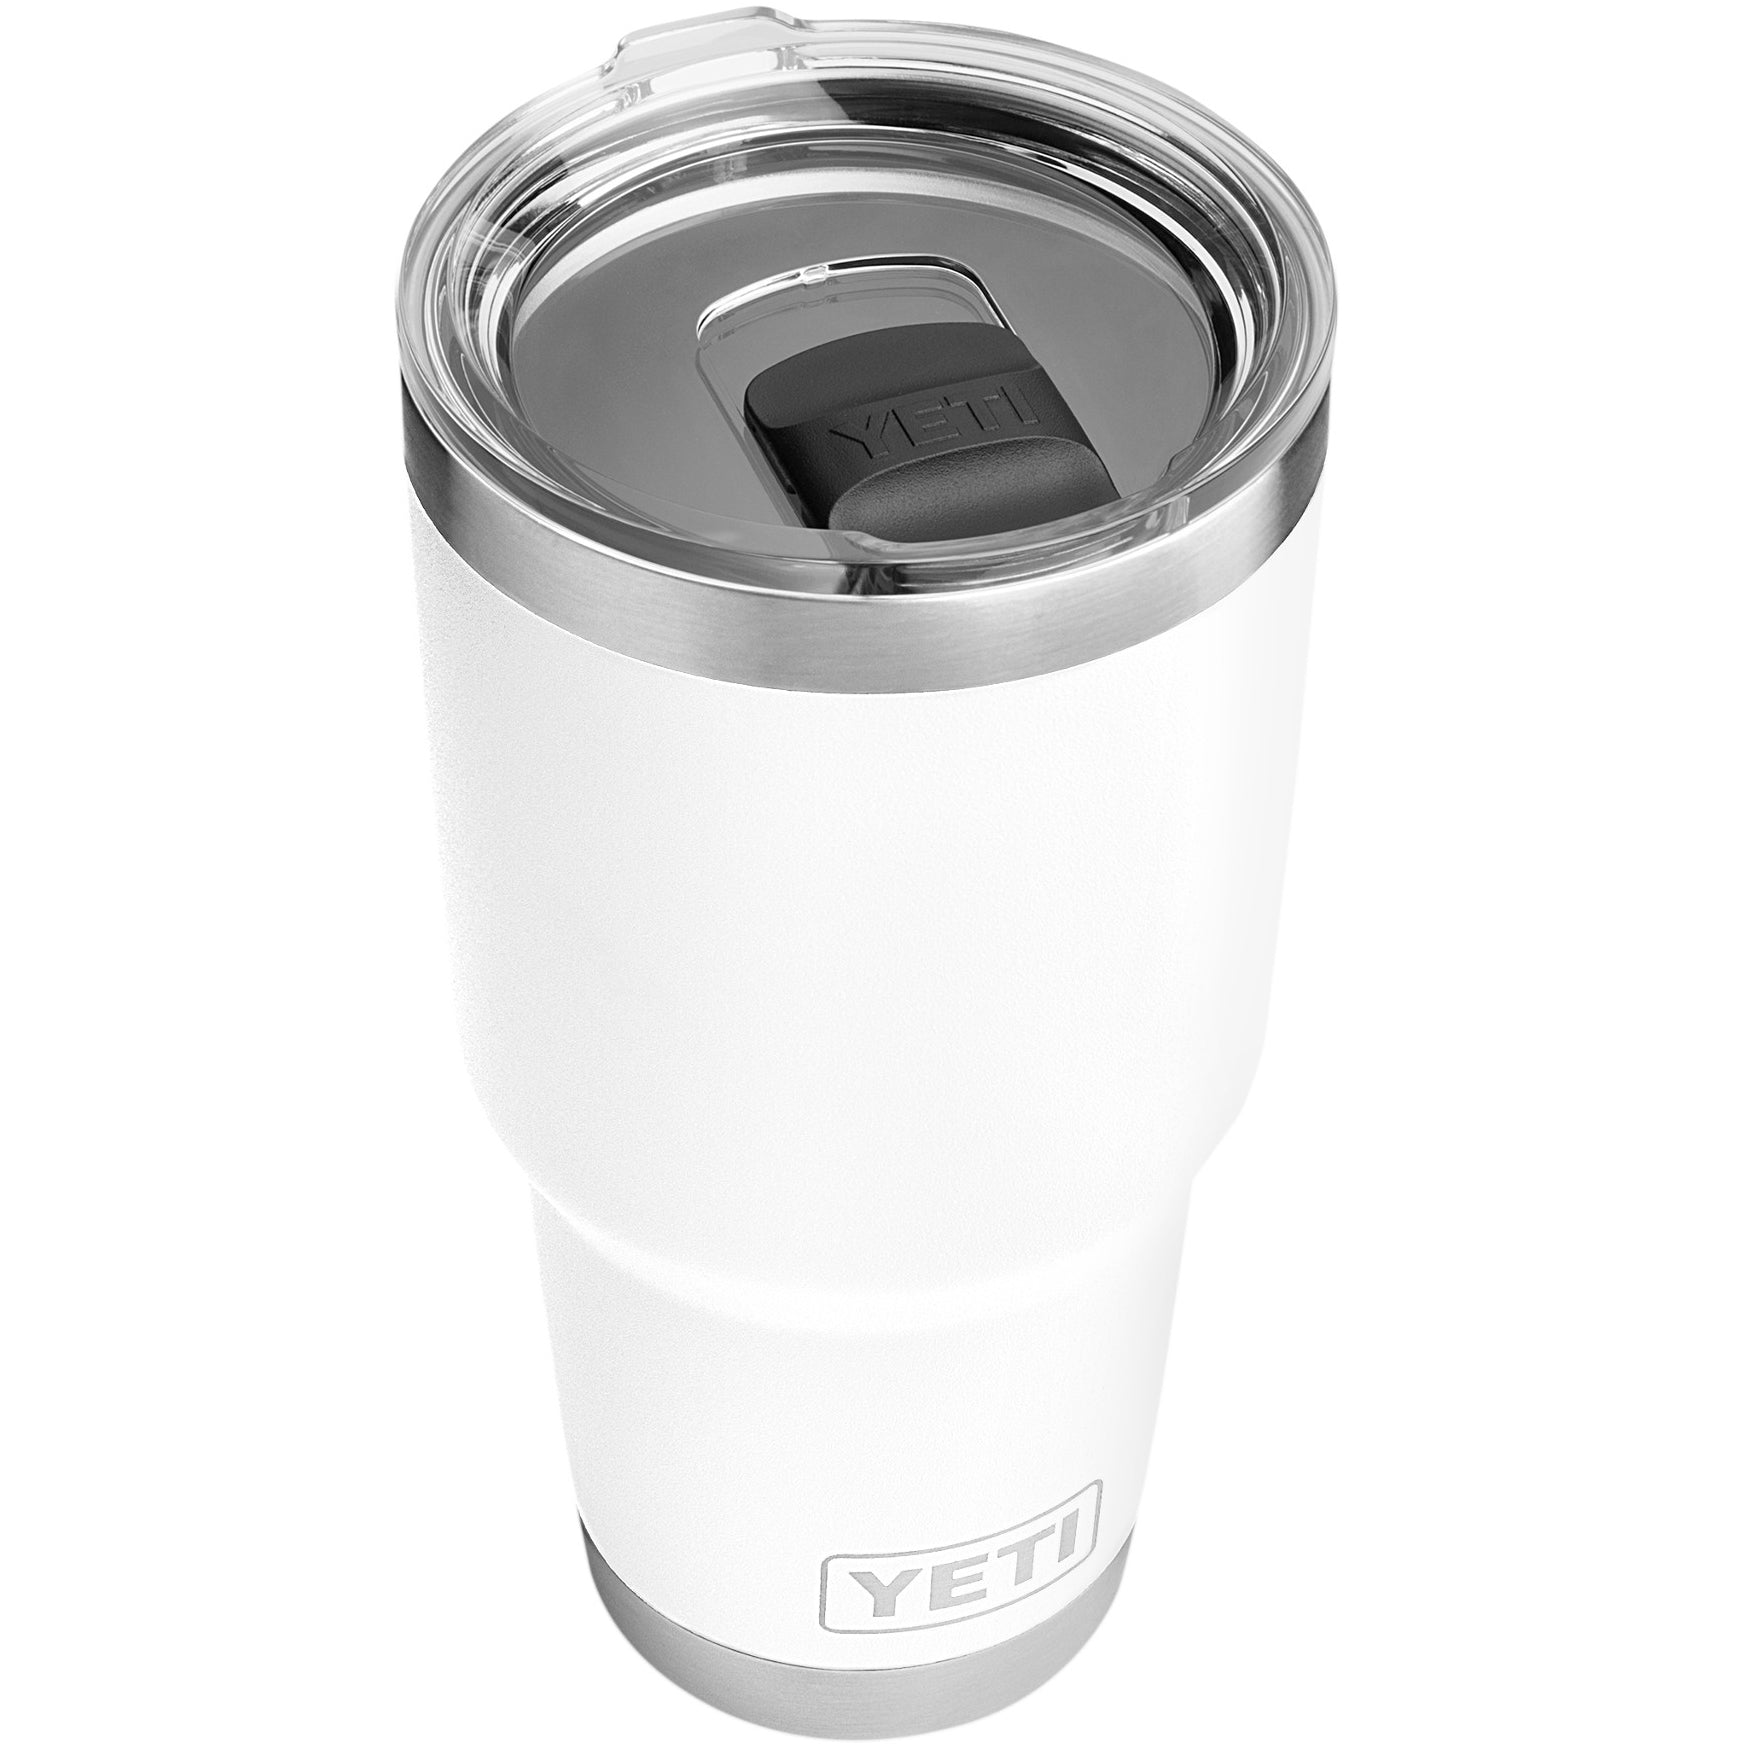 Yeti Magnetic Slider Replacement - Yeti Magslider Replacement - Yeti Lid Magnet Fits All Yeti Tumbler Magslider Lids - (BEACH)-BPA FREE/HAND Wash